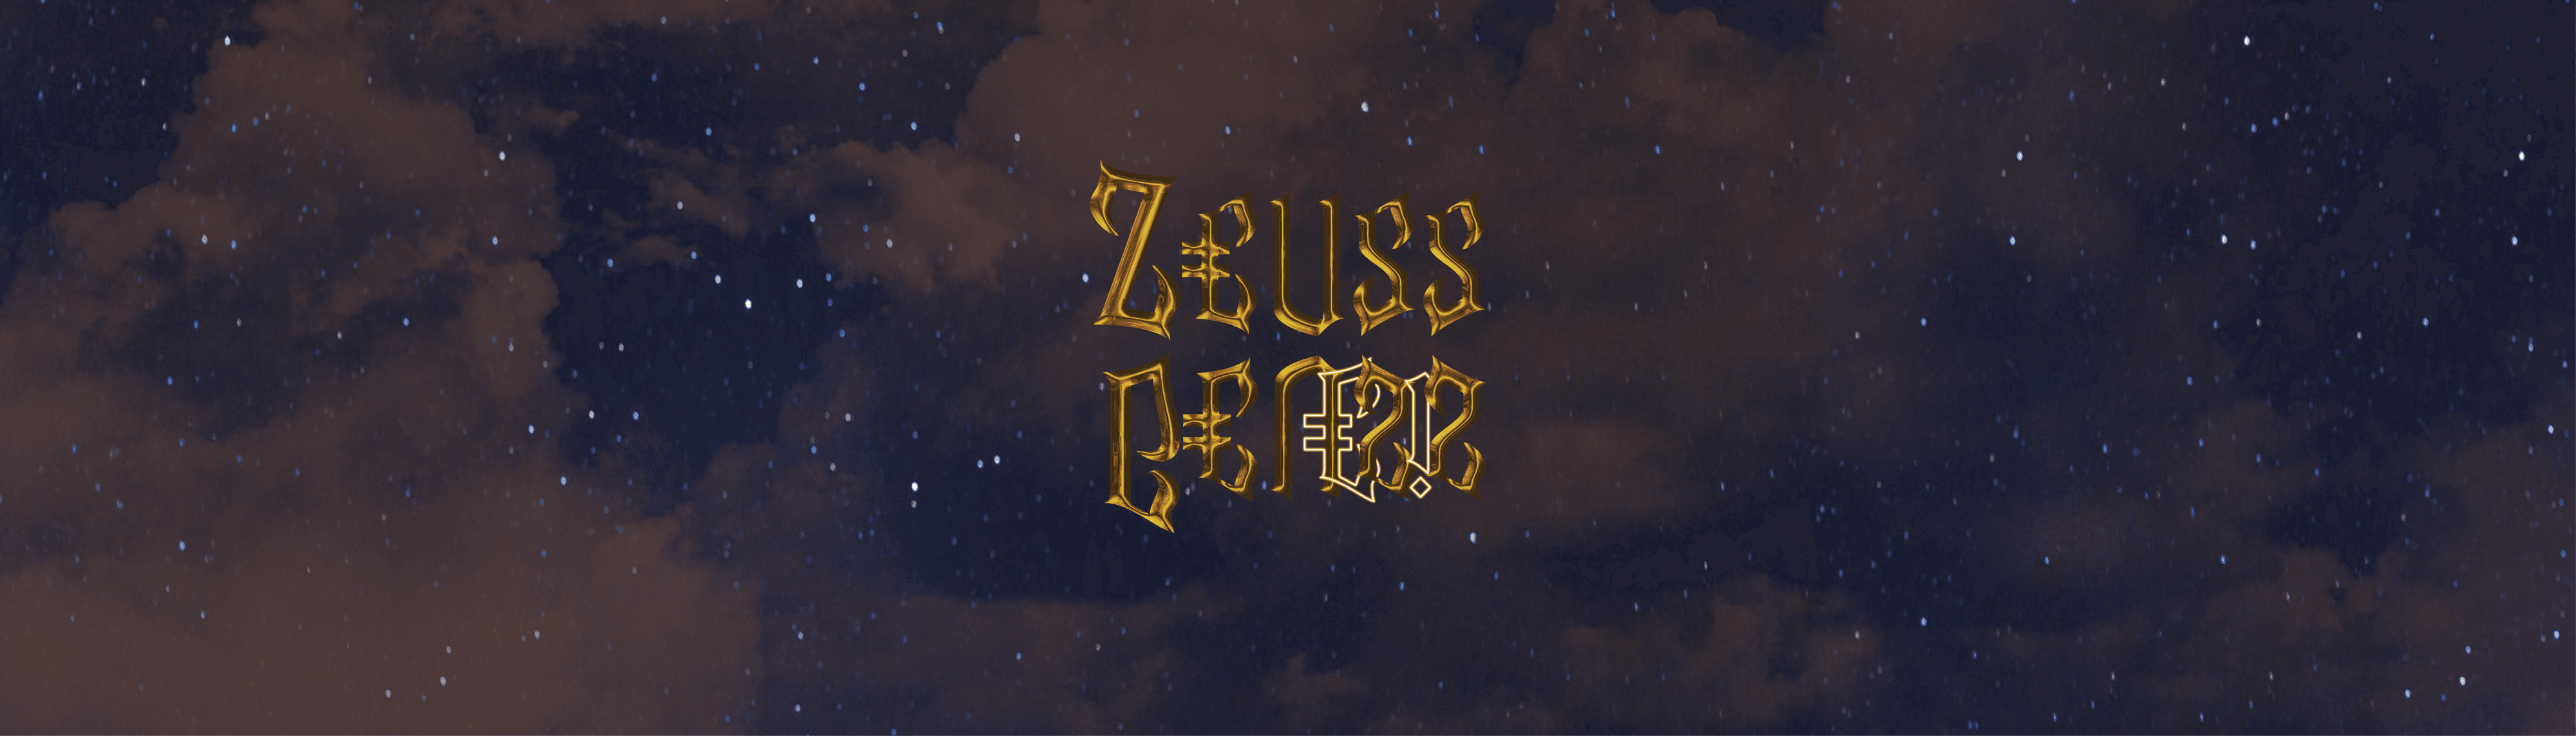 Zeuss World Genesis